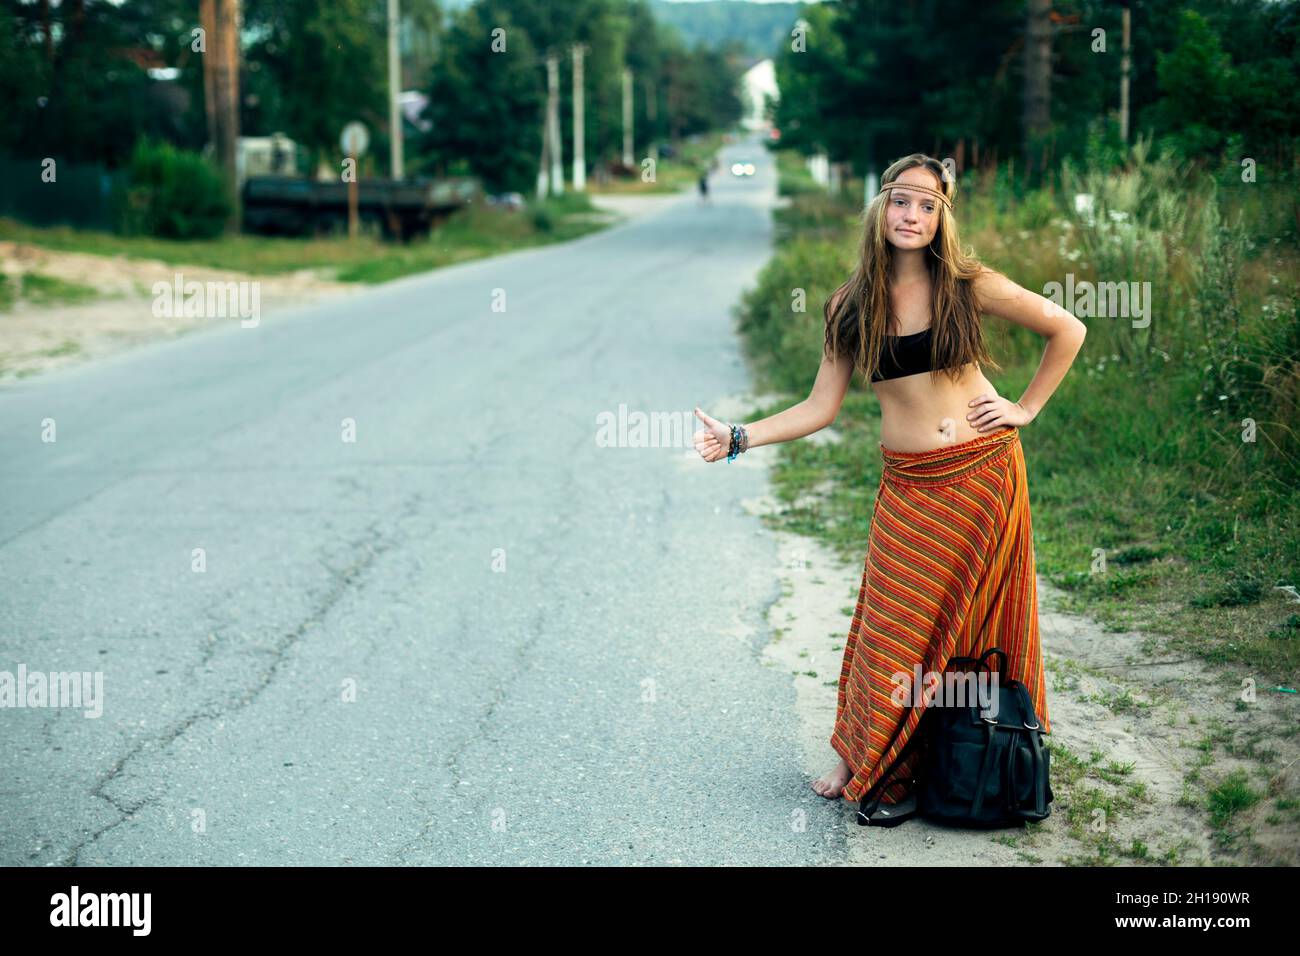 Ein Hippie-Mädchen, das in der Nähe der Landstraße stimmt. Anhalter für Wanderungen. Stockfoto